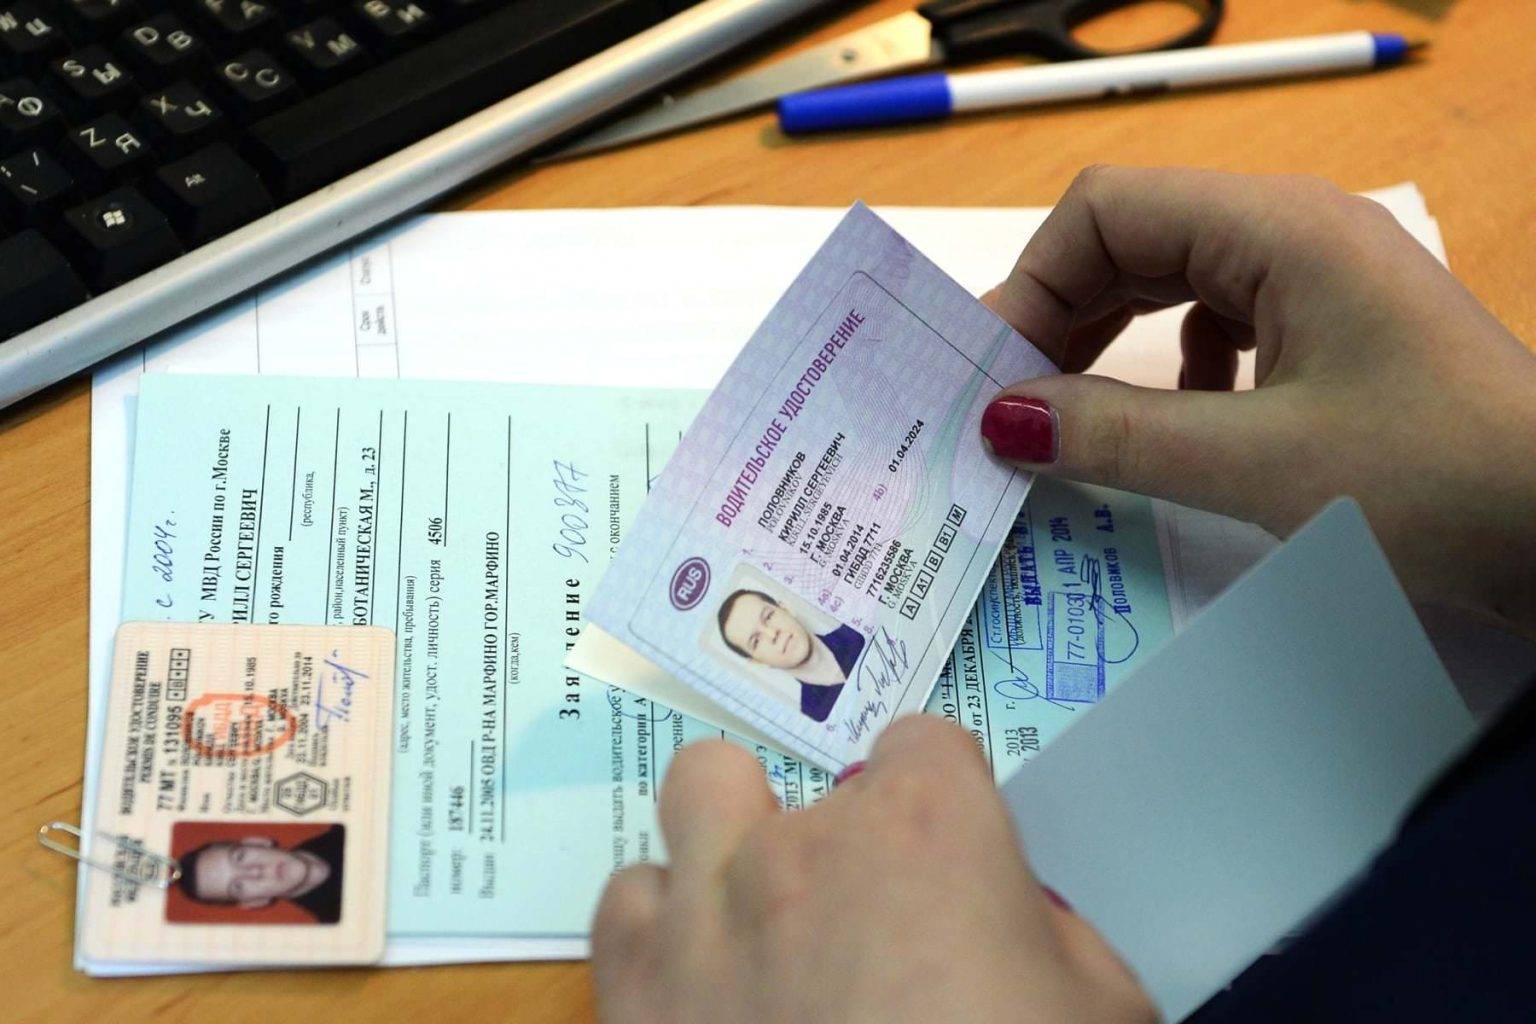 Процедура замены иностранных водительских прав на российские с несколькими категориями